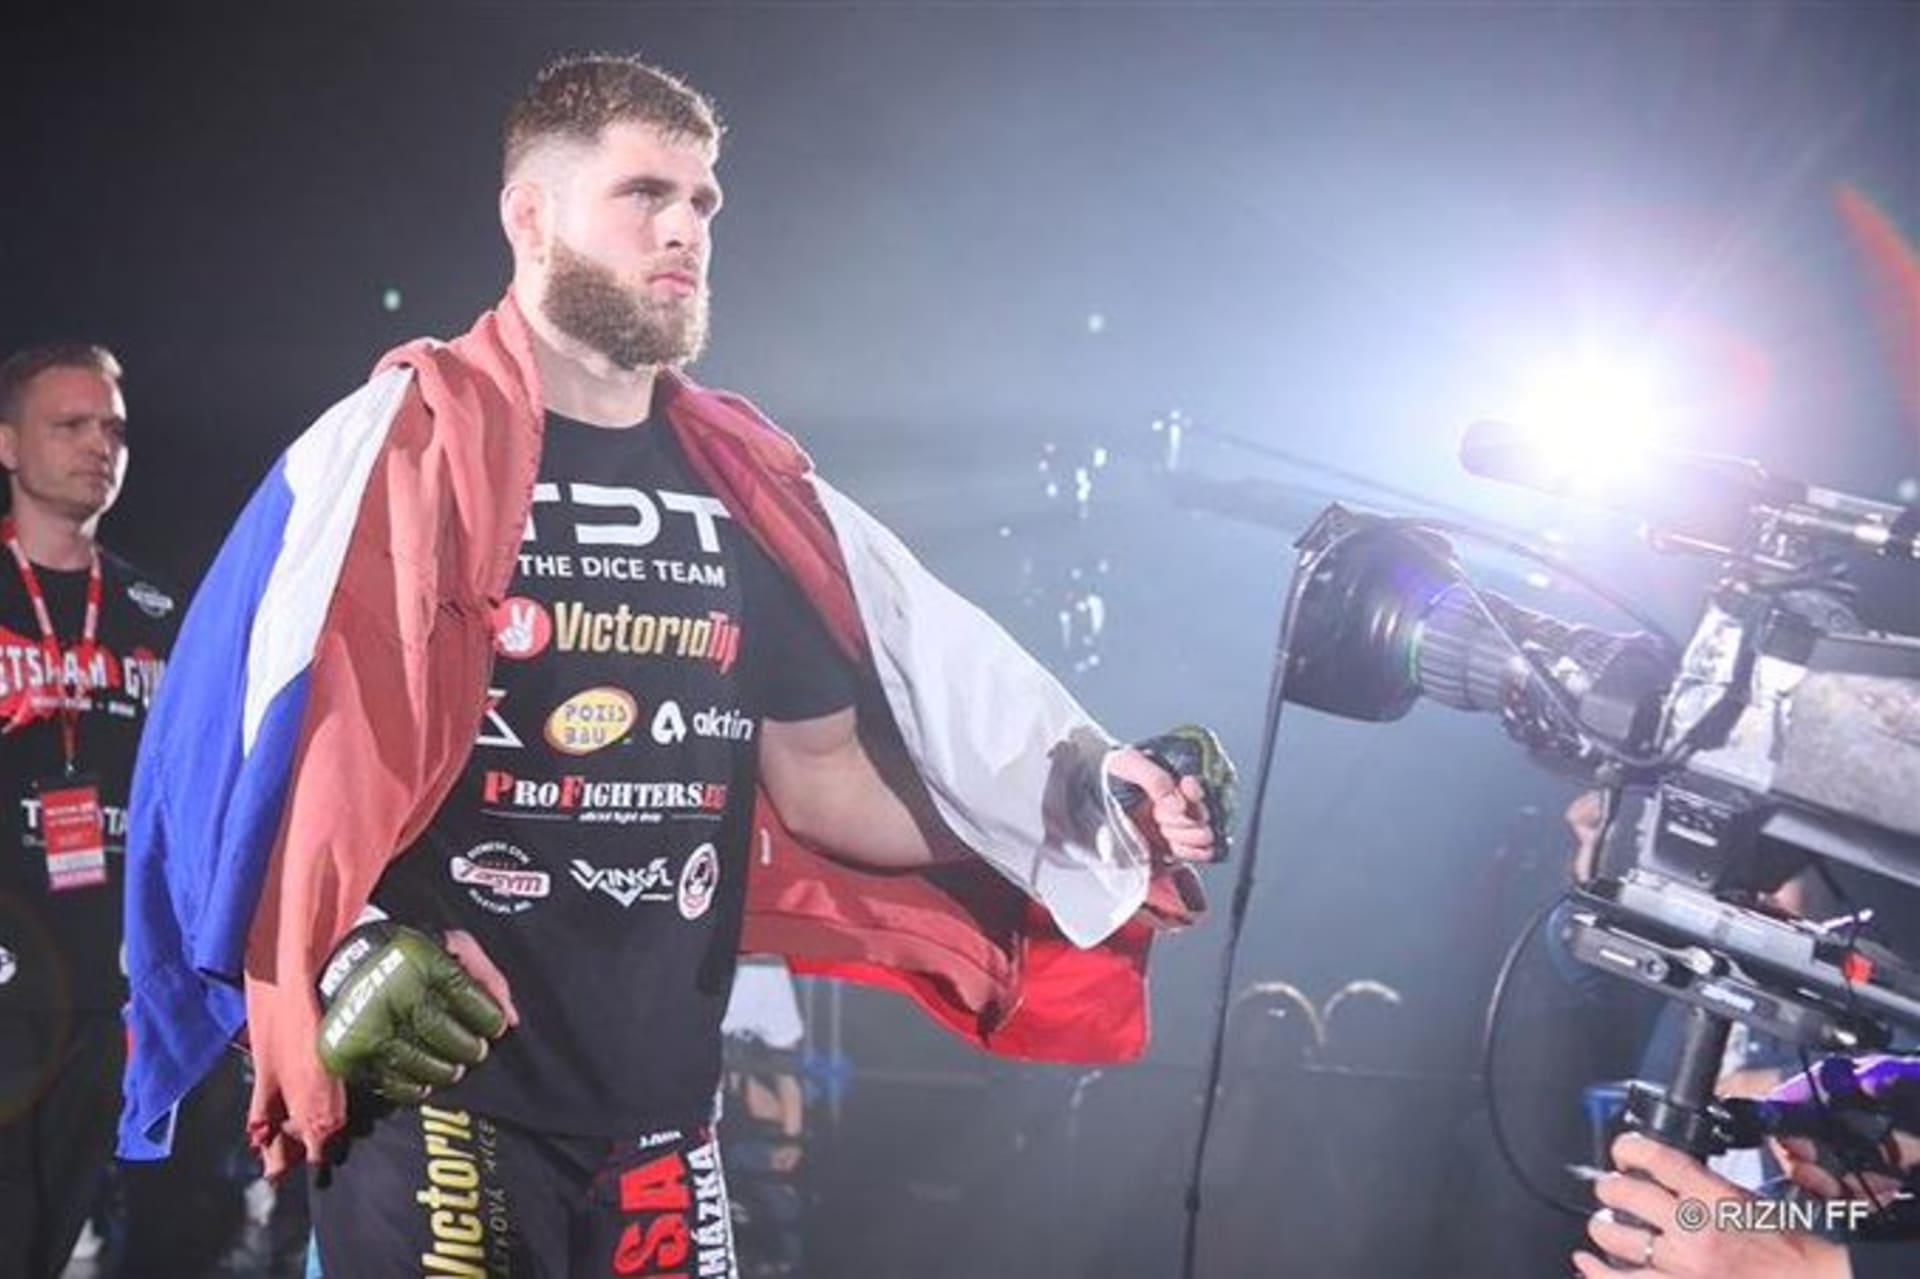 Bojovník Jiří Denisa Procházka do UFC vstoupil velmi povedeně. 